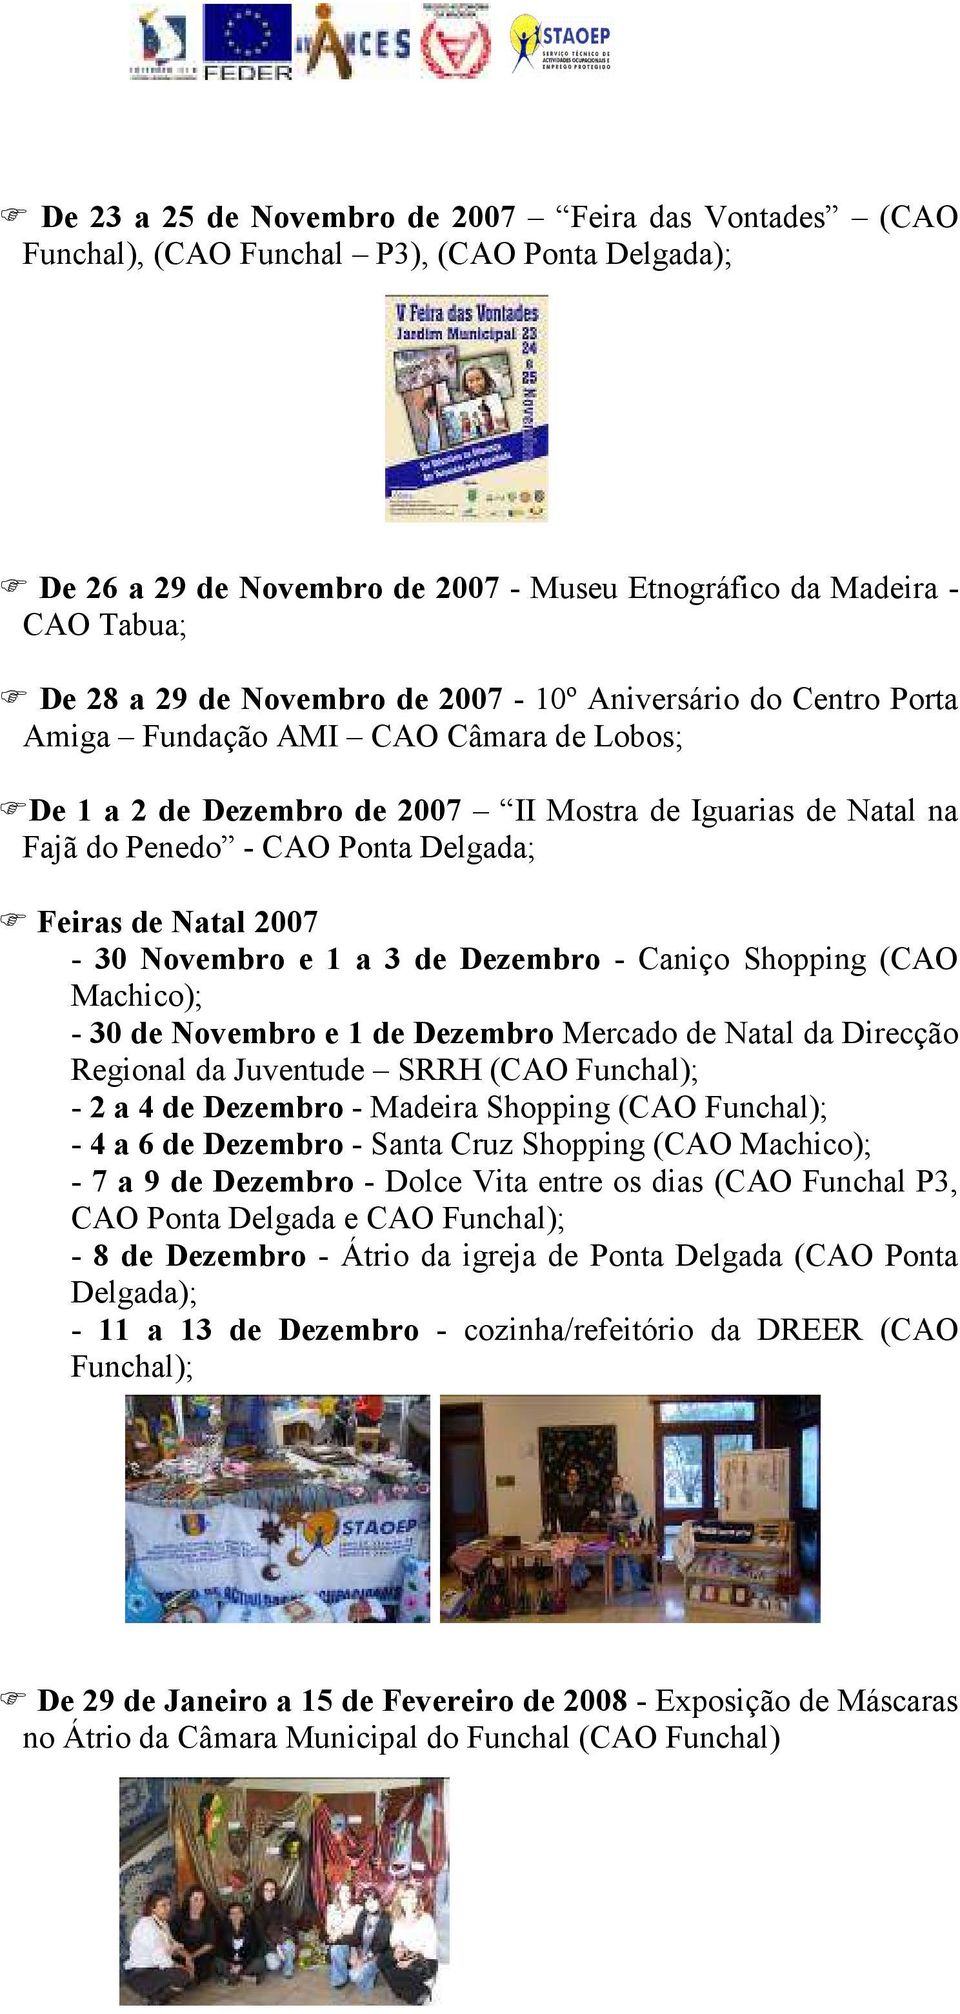 Natal 2007-30 Novembro e 1 a 3 de Dezembro - Caniço Shopping (CAO Machico); - 30 de Novembro e 1 de Dezembro Mercado de Natal da Direcção Regional da Juventude SRRH (CAO Funchal); - 2 a 4 de Dezembro